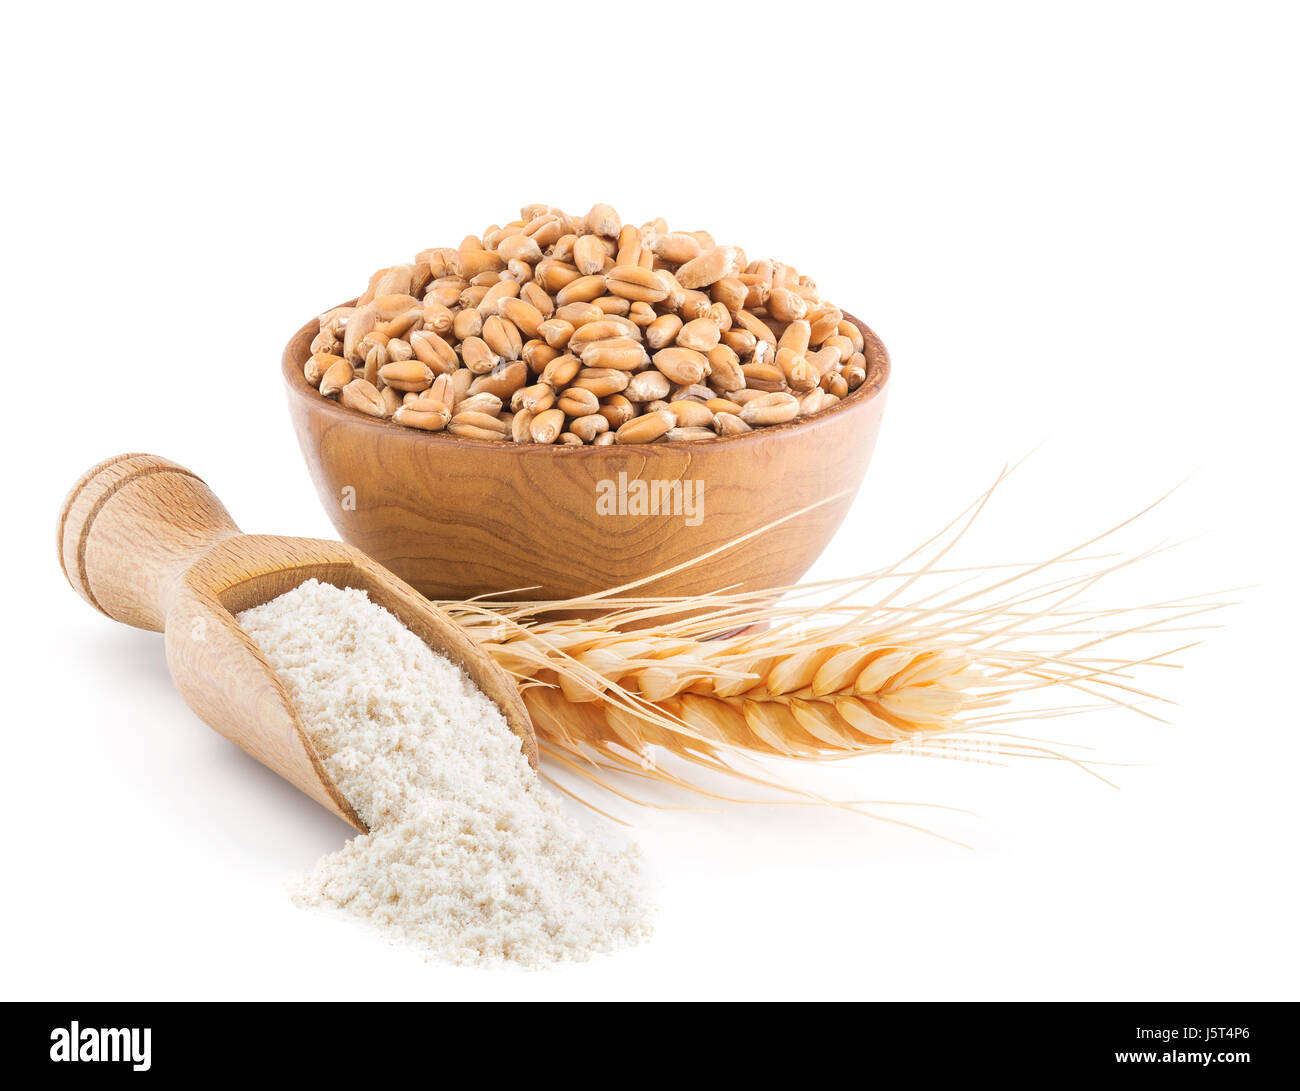 Whole grain wheat flour isolated on white Stock Photo